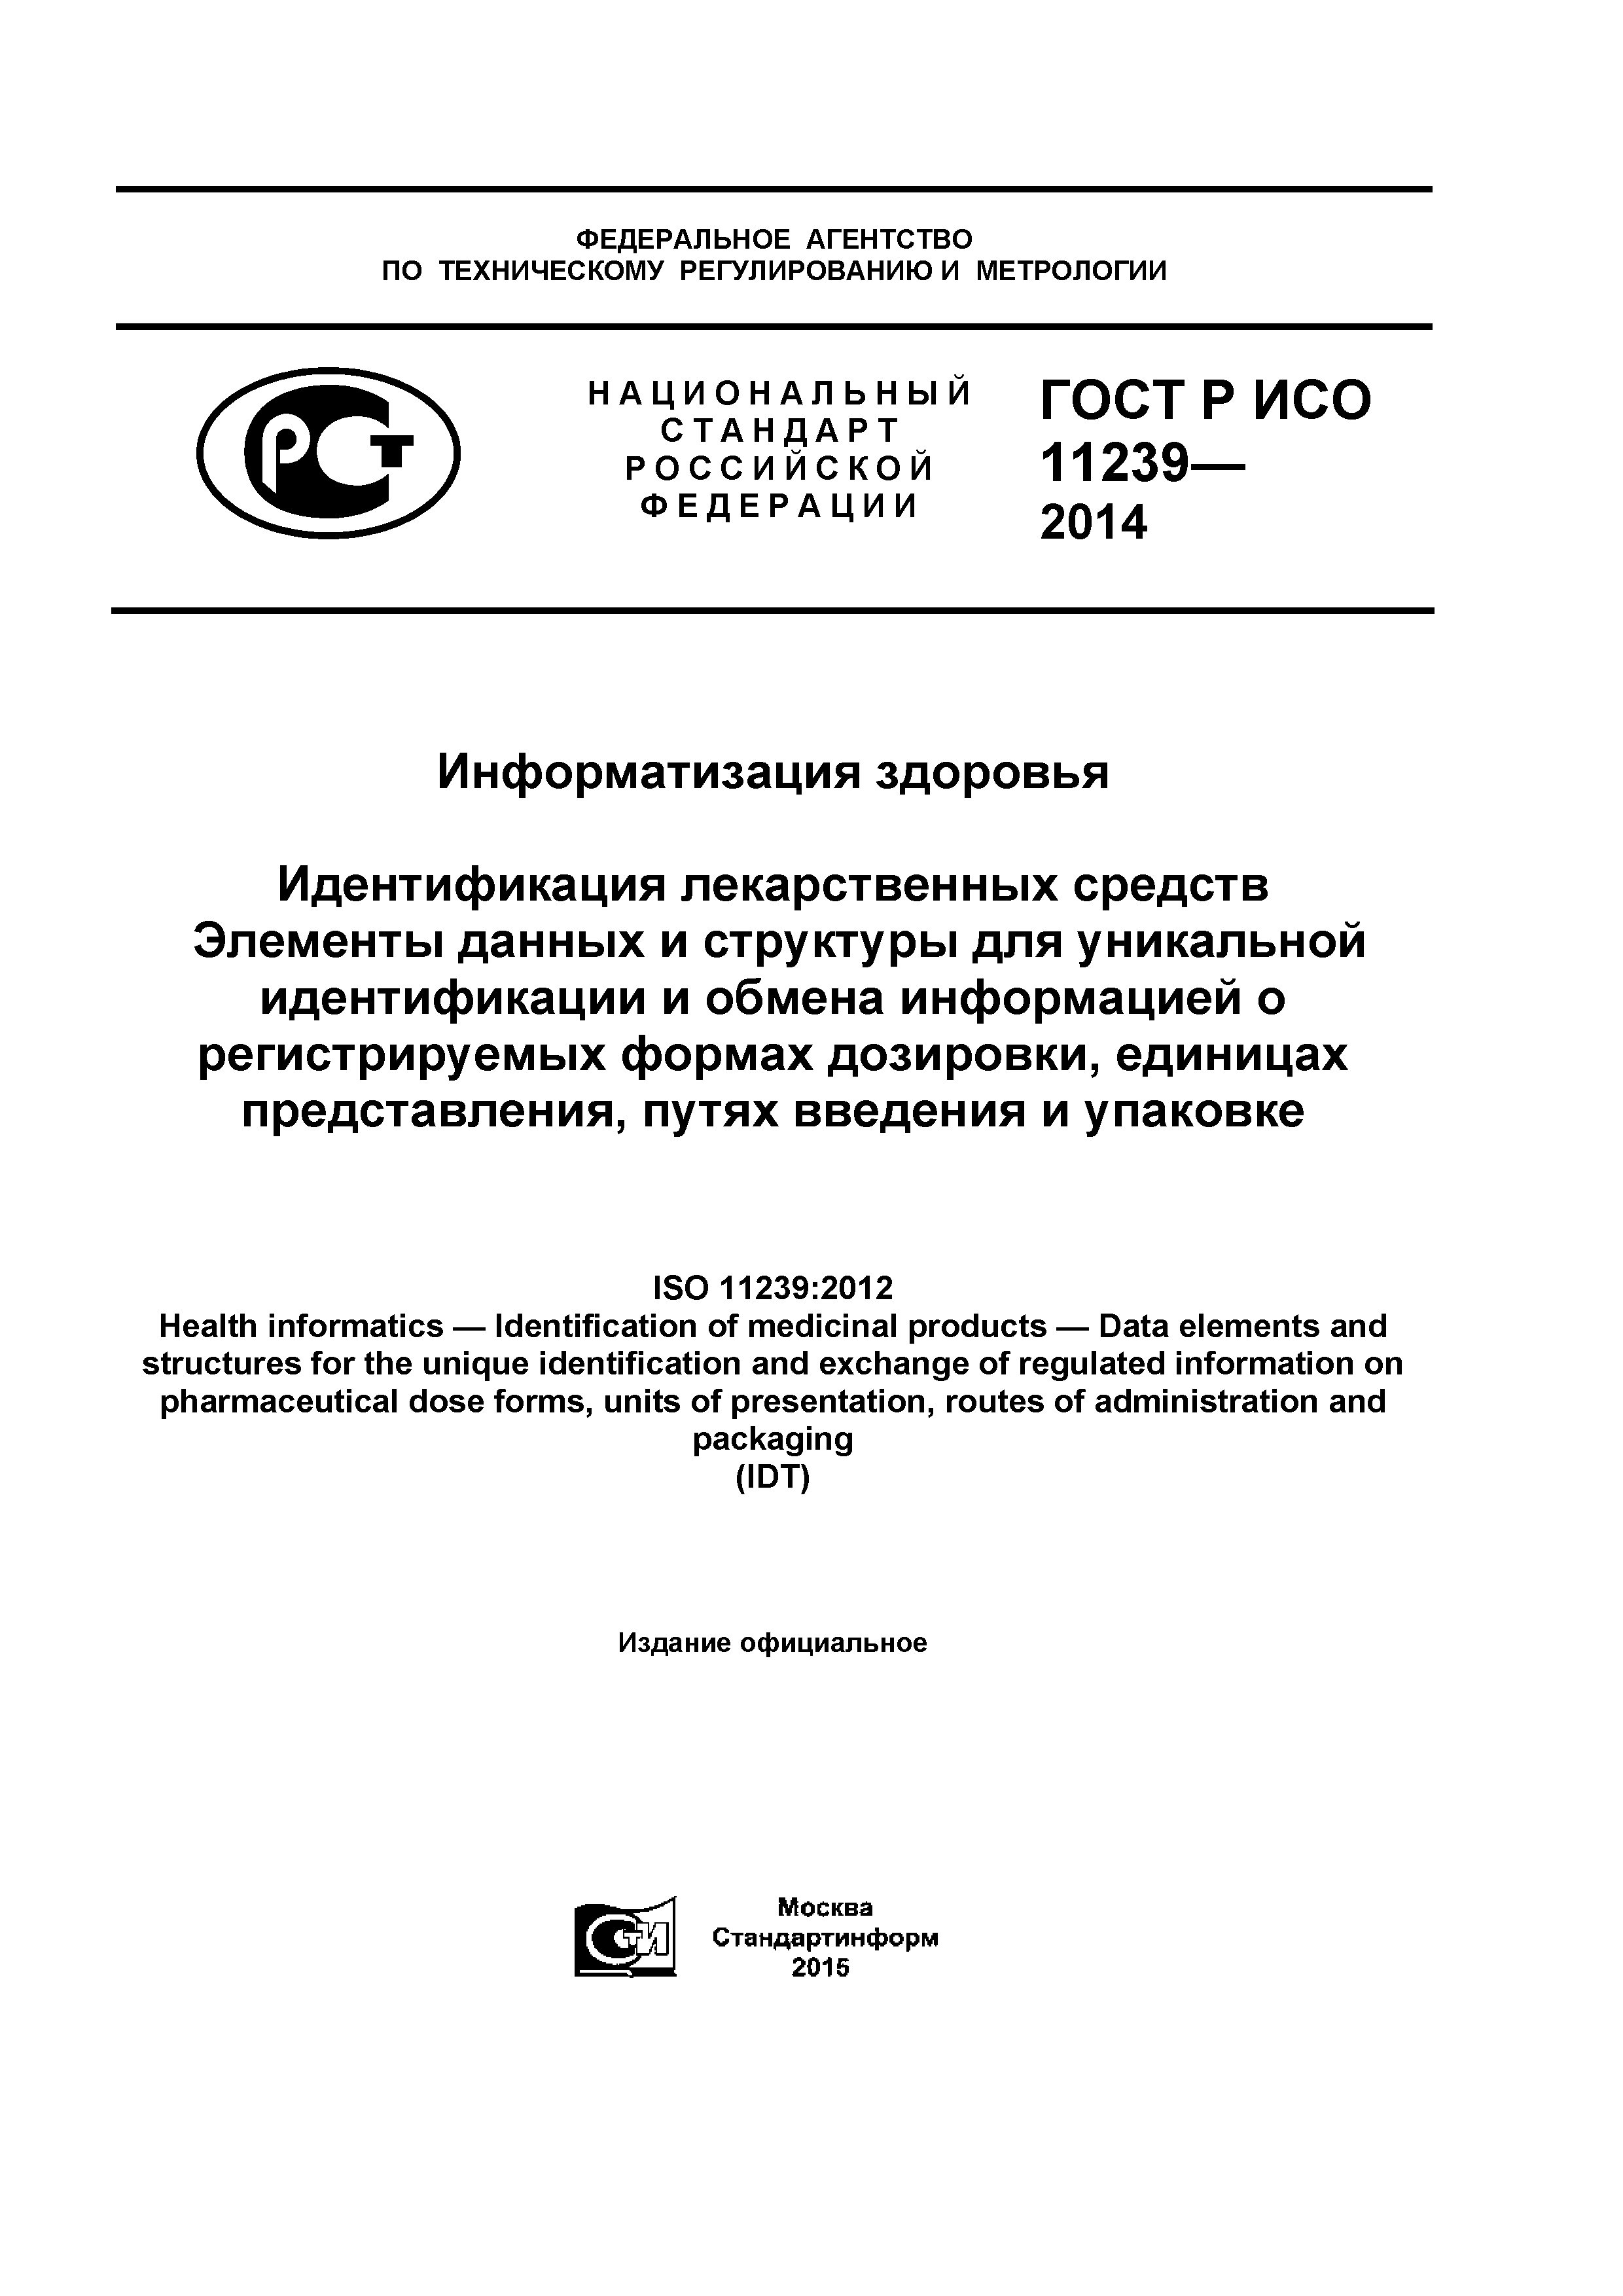 ГОСТ Р ИСО 11239-2014